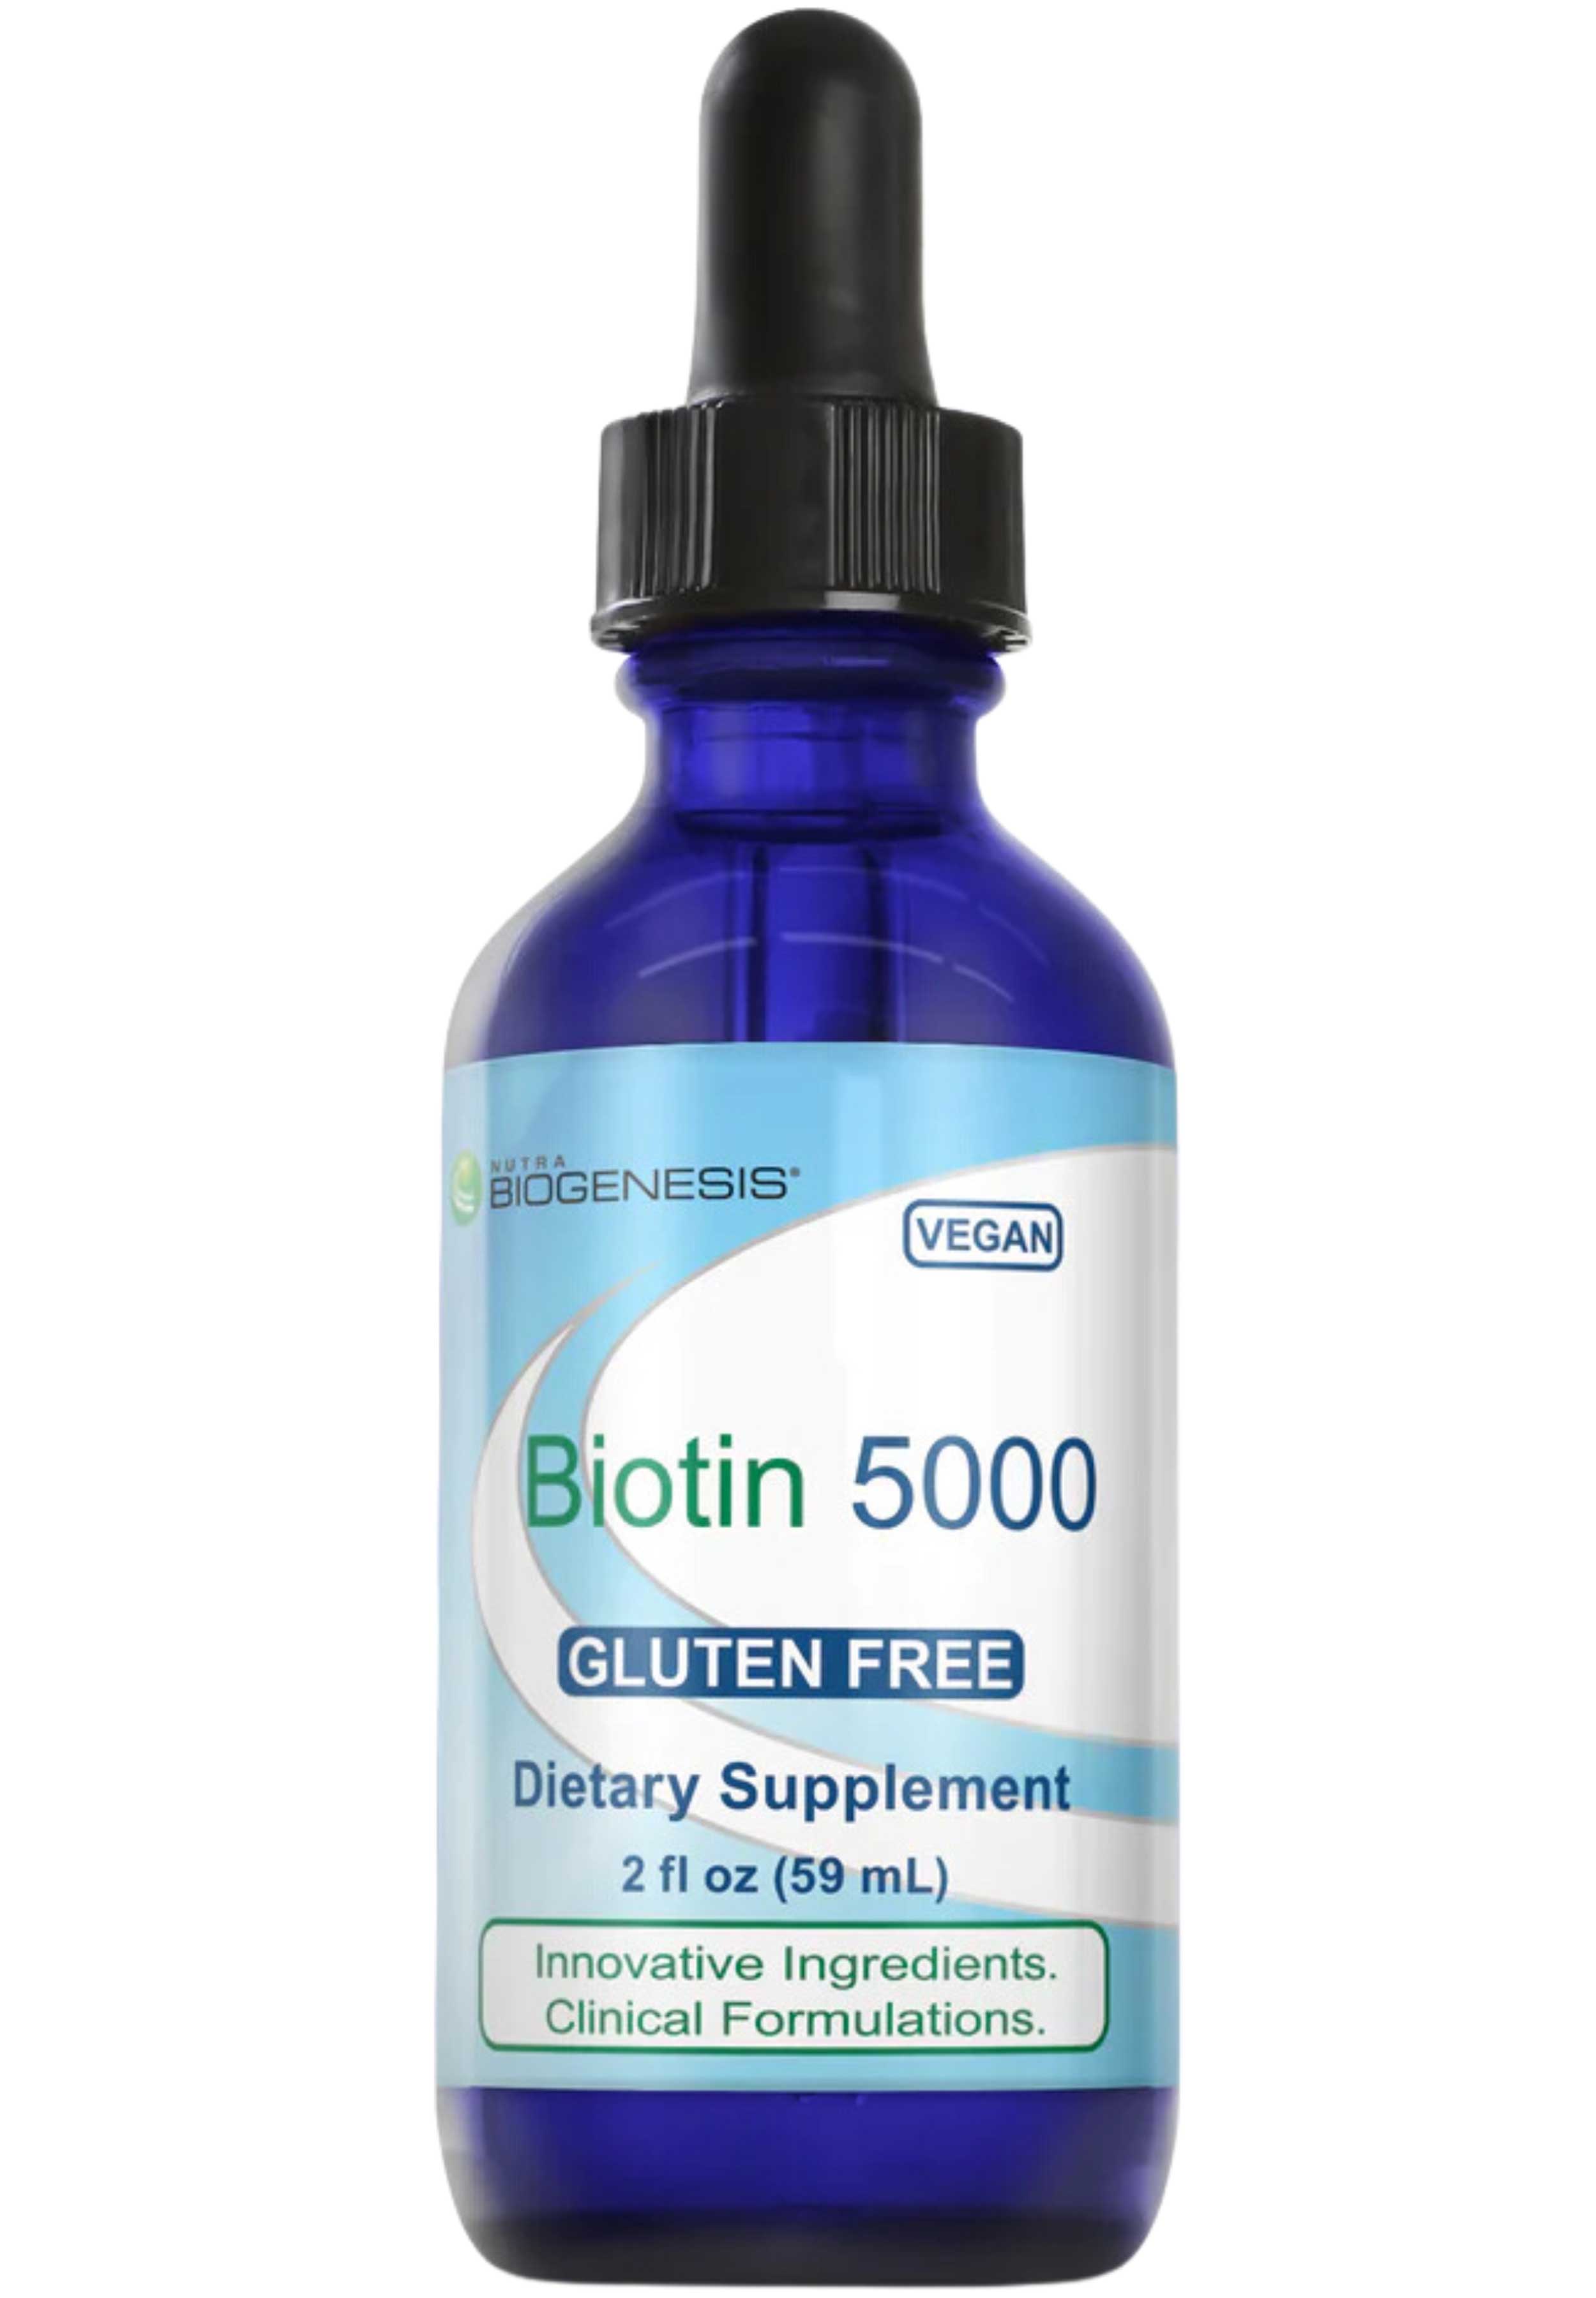 Nutra BioGenesis Biotin 5000